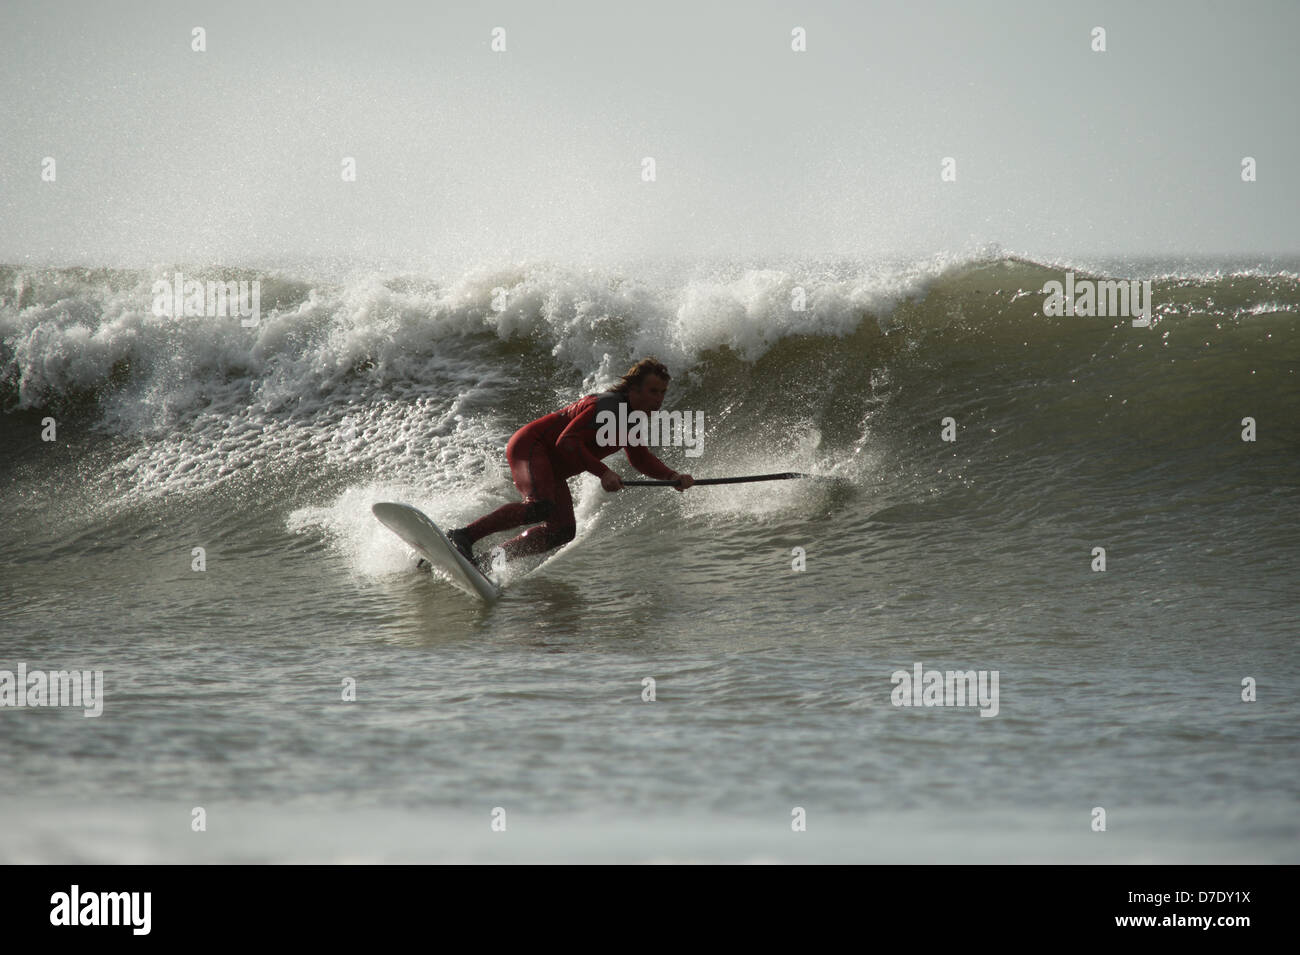 Stand Up Paddle board surfer Chris Griffiths, Champion britannique montre la voie classique de l'autre côté de la vague des surfeurs. Séquence. Gower surf. Banque D'Images